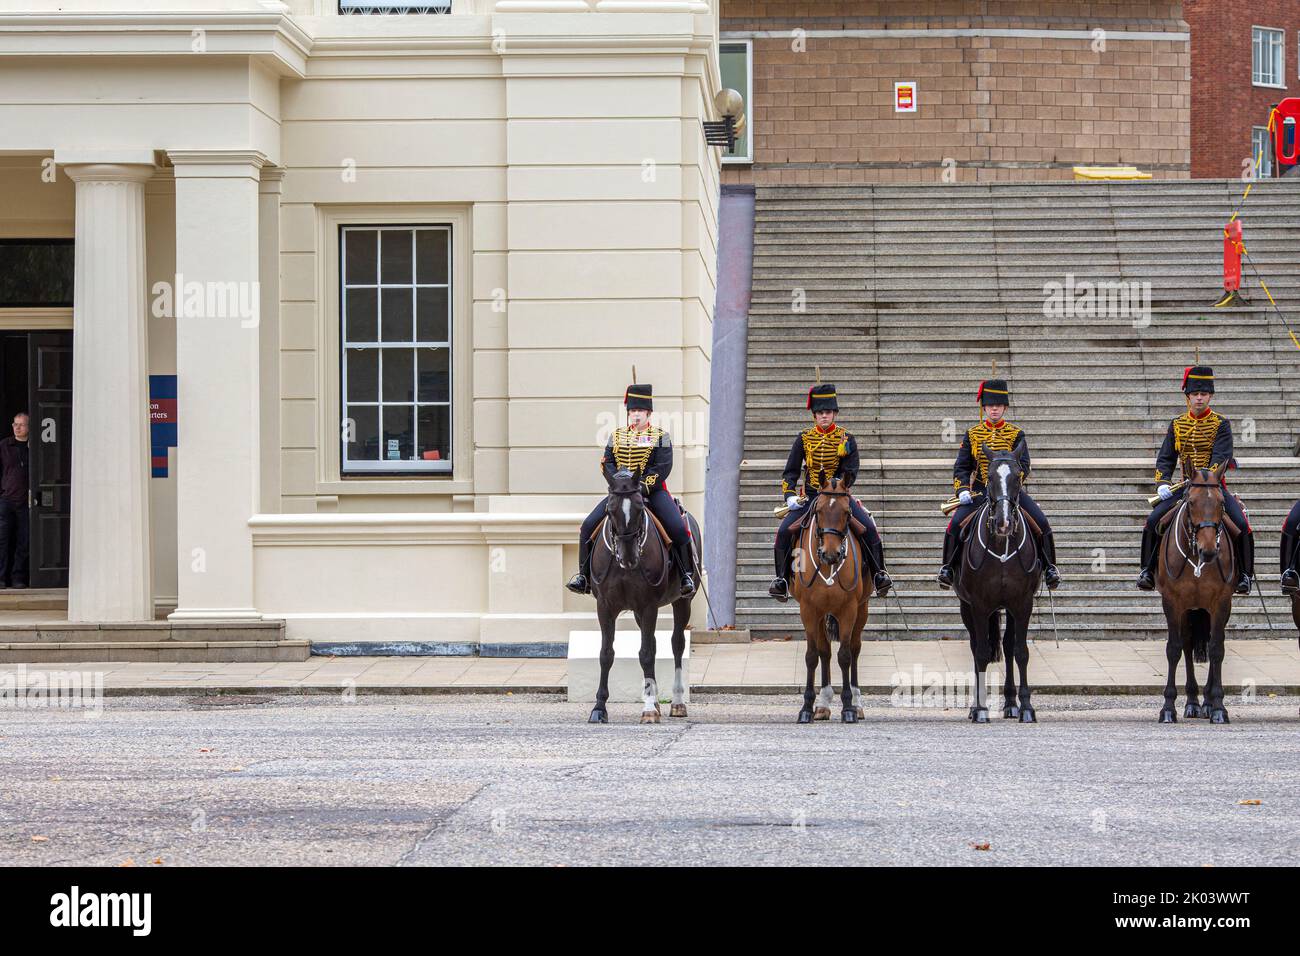 Londres, Royaume-Uni. 9th septembre 2022. La troupe du roi Artillerie royale, Armée britannique, photo Horst A. Friedrichs Alamy Live News Banque D'Images